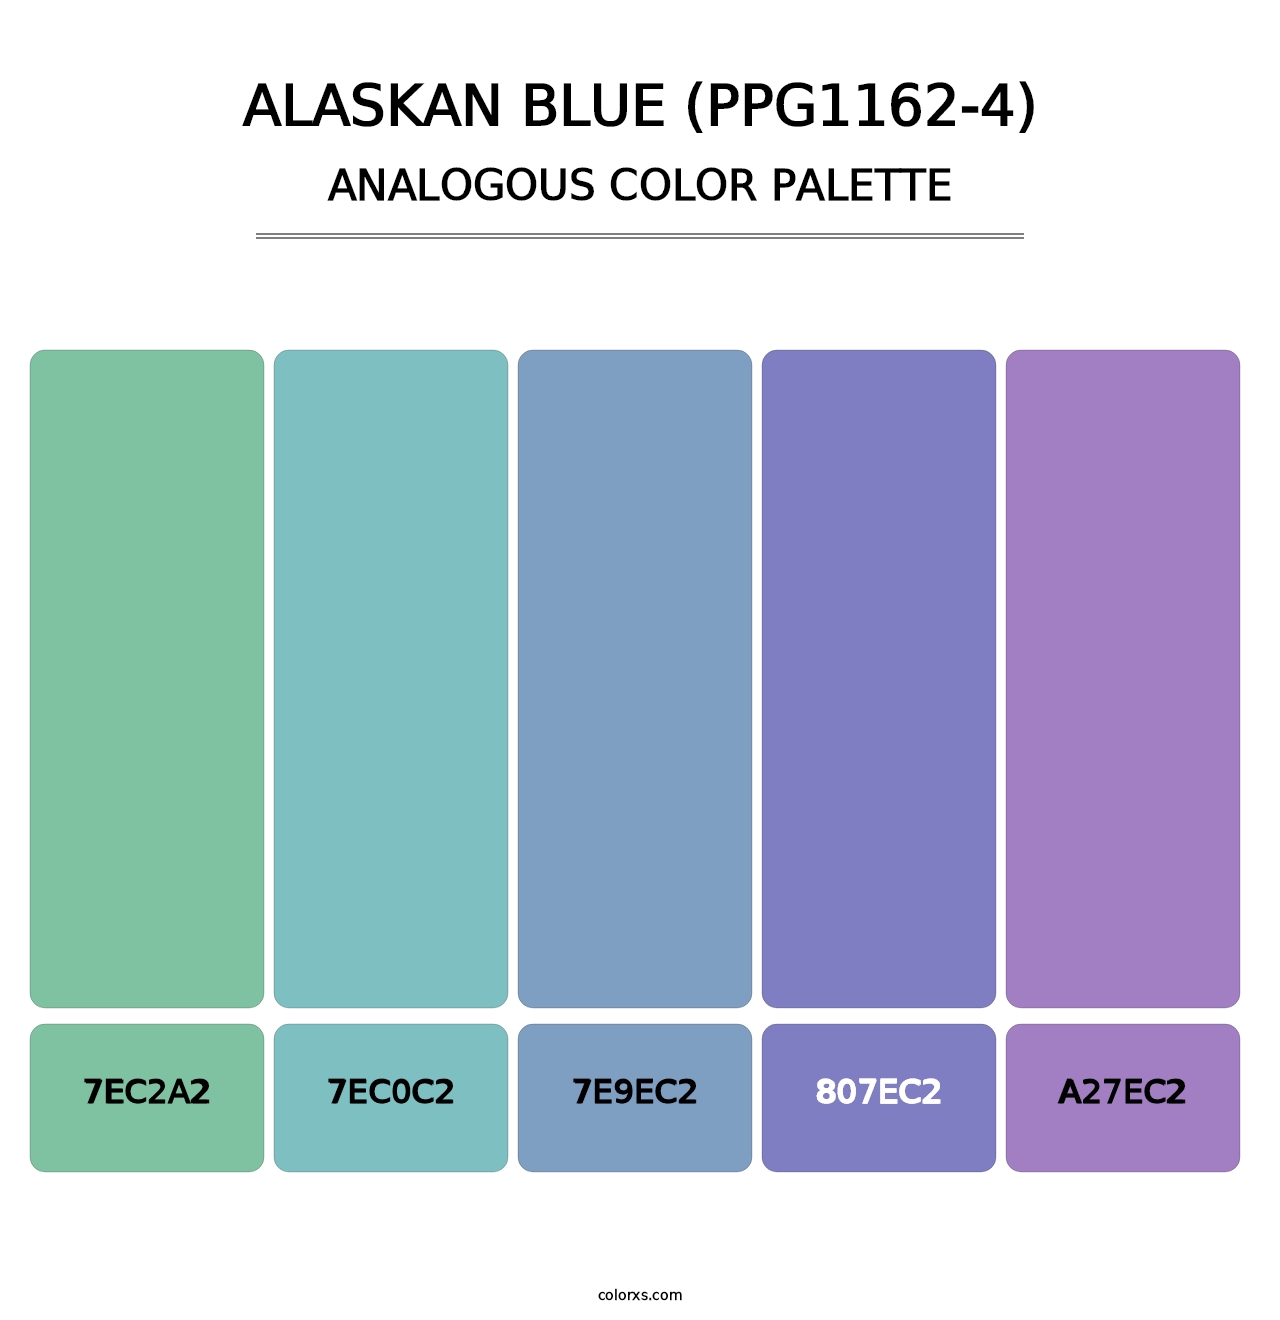 Alaskan Blue (PPG1162-4) - Analogous Color Palette